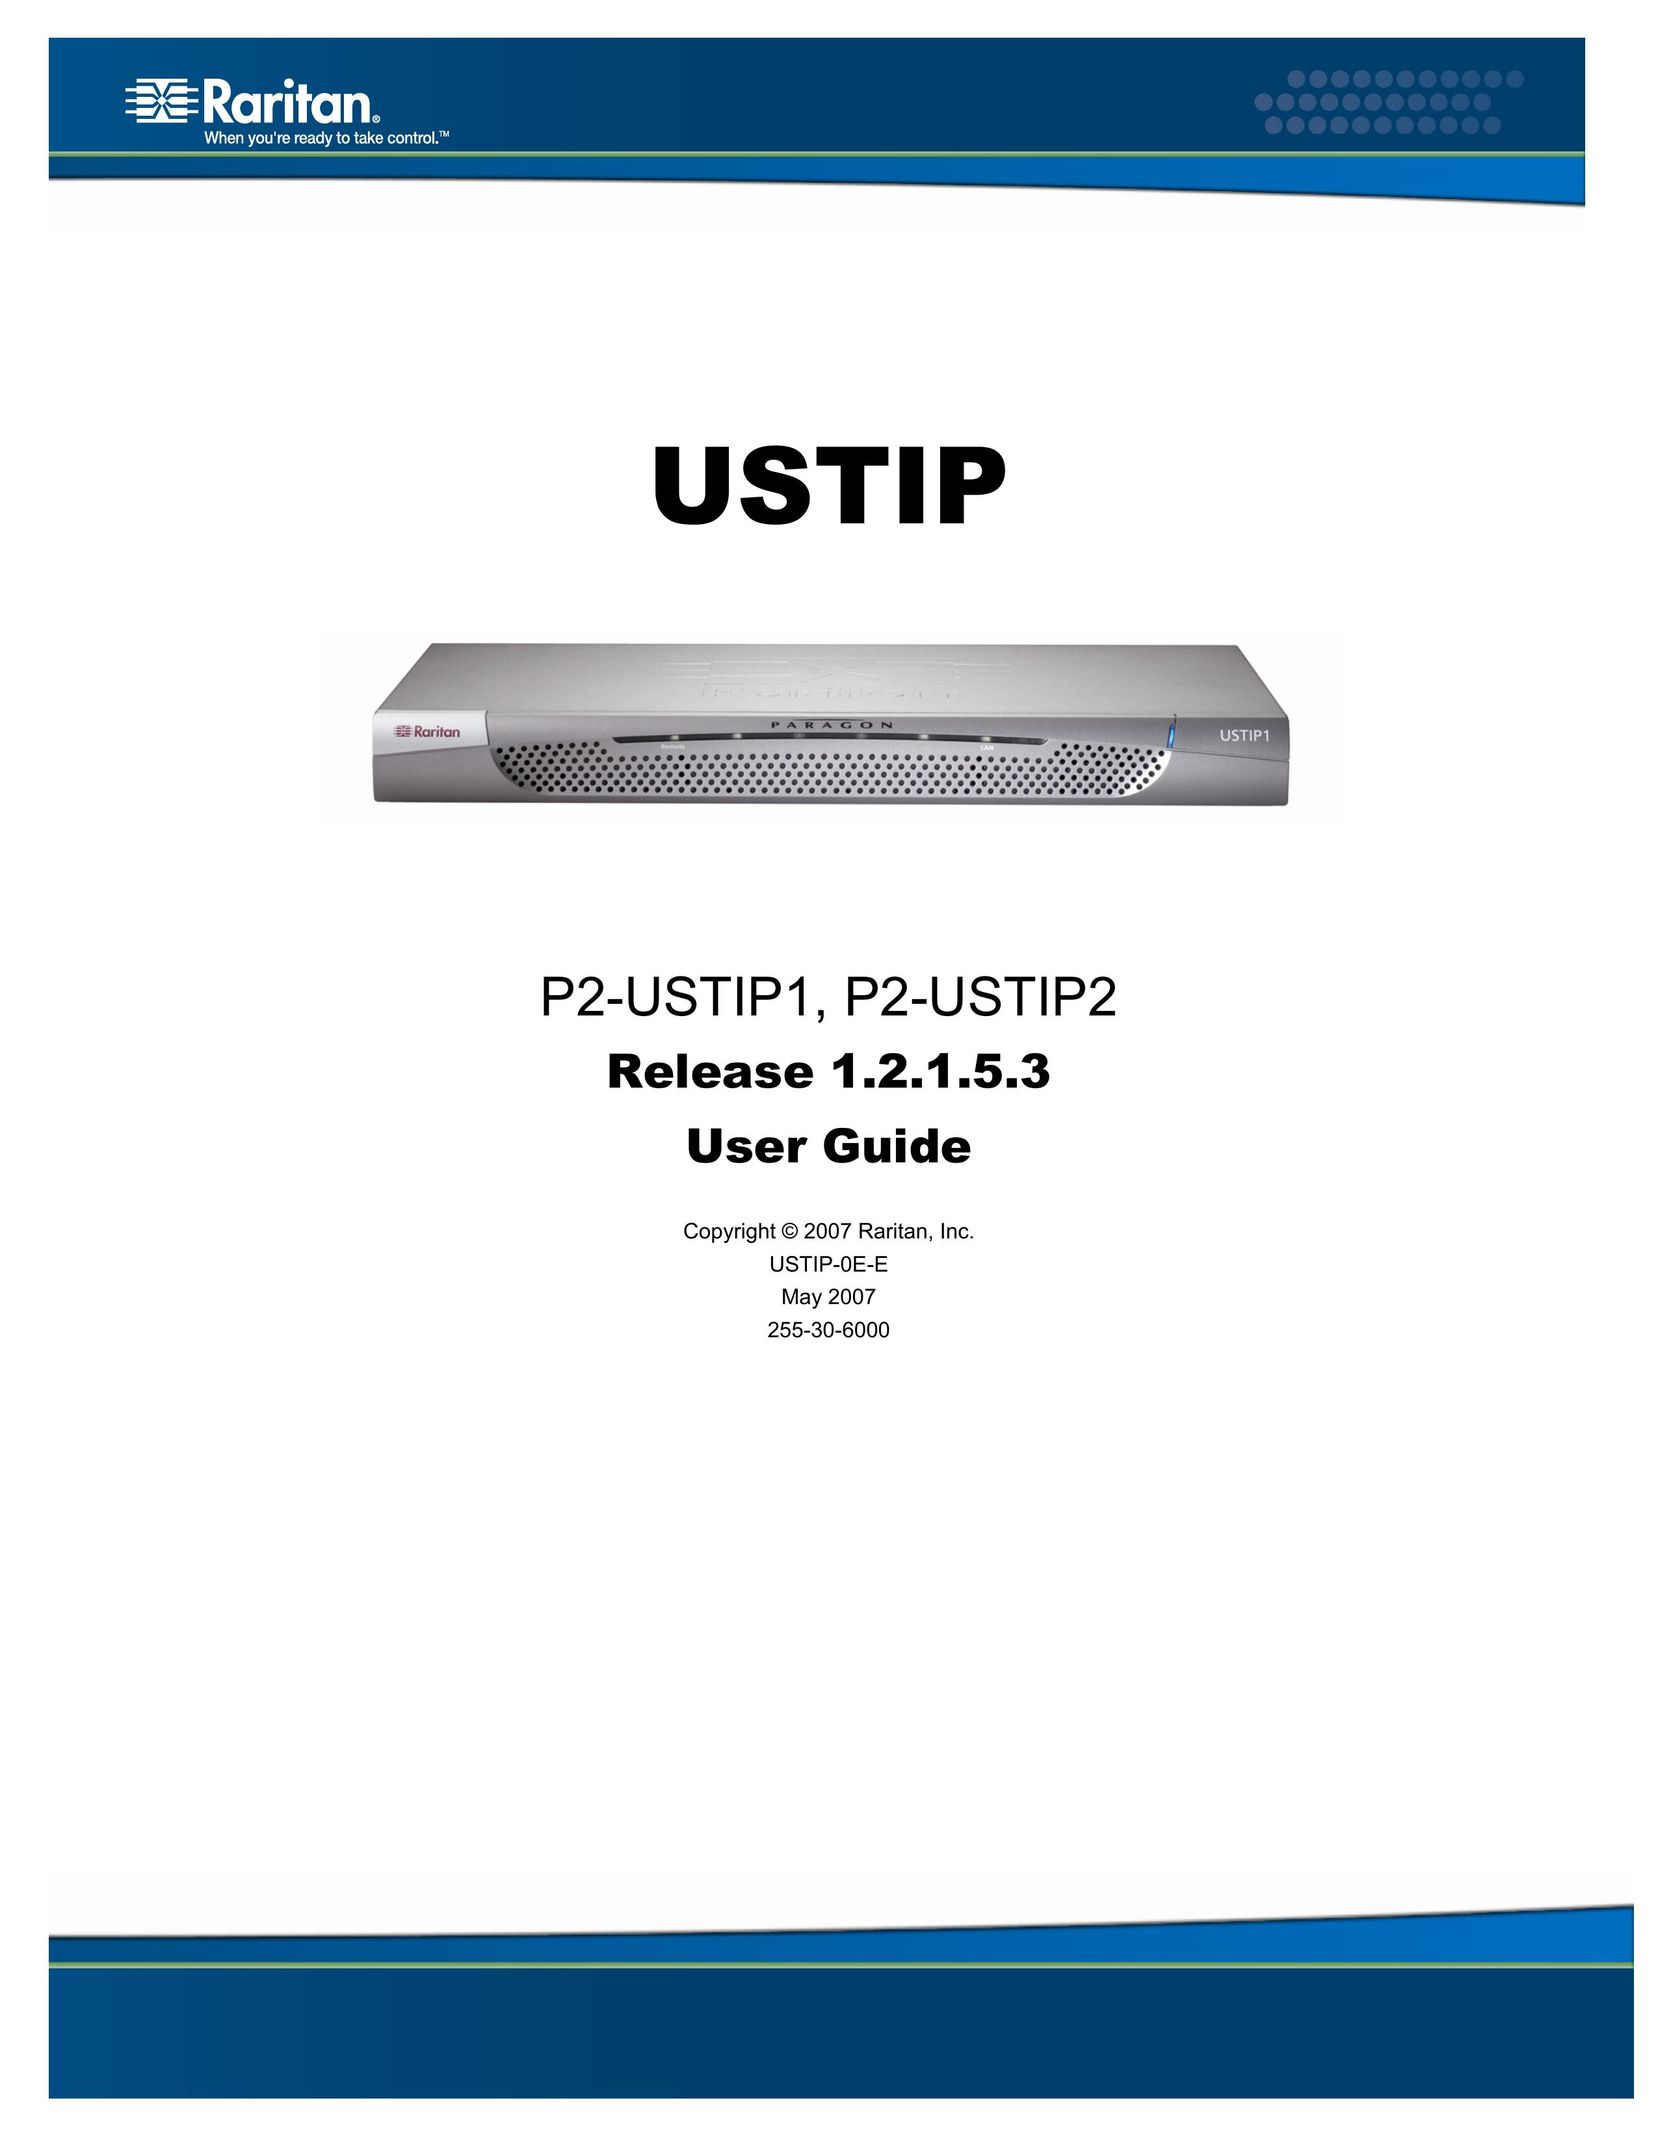 Raritan Computer P2-USTIP2 Home Theater Server User Manual